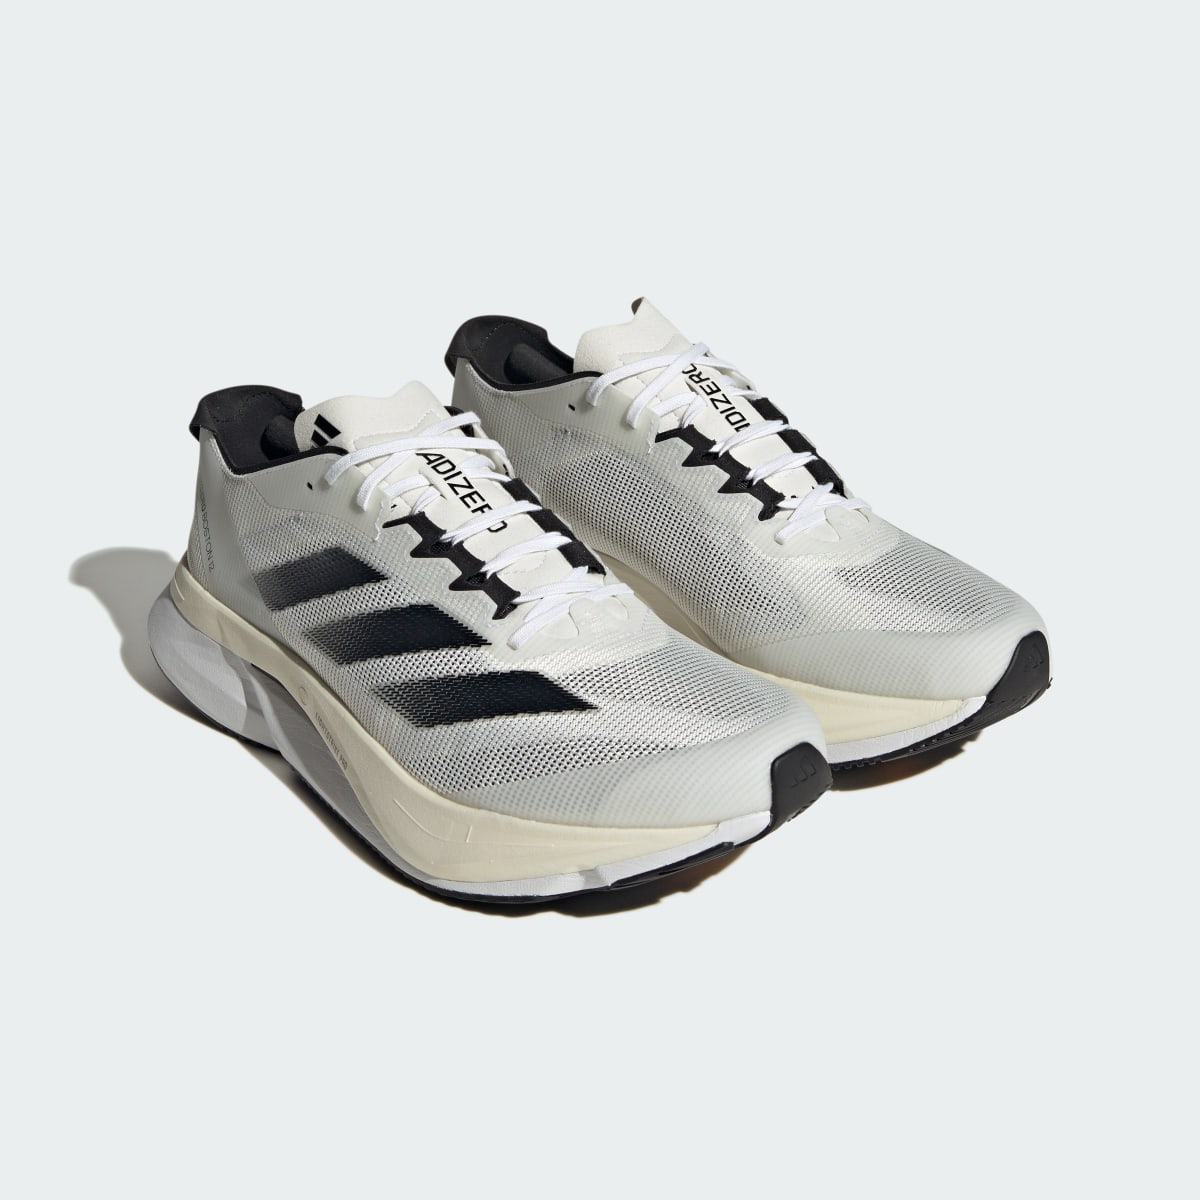 Adidas Adizero Boston 12 Running Shoes. 5